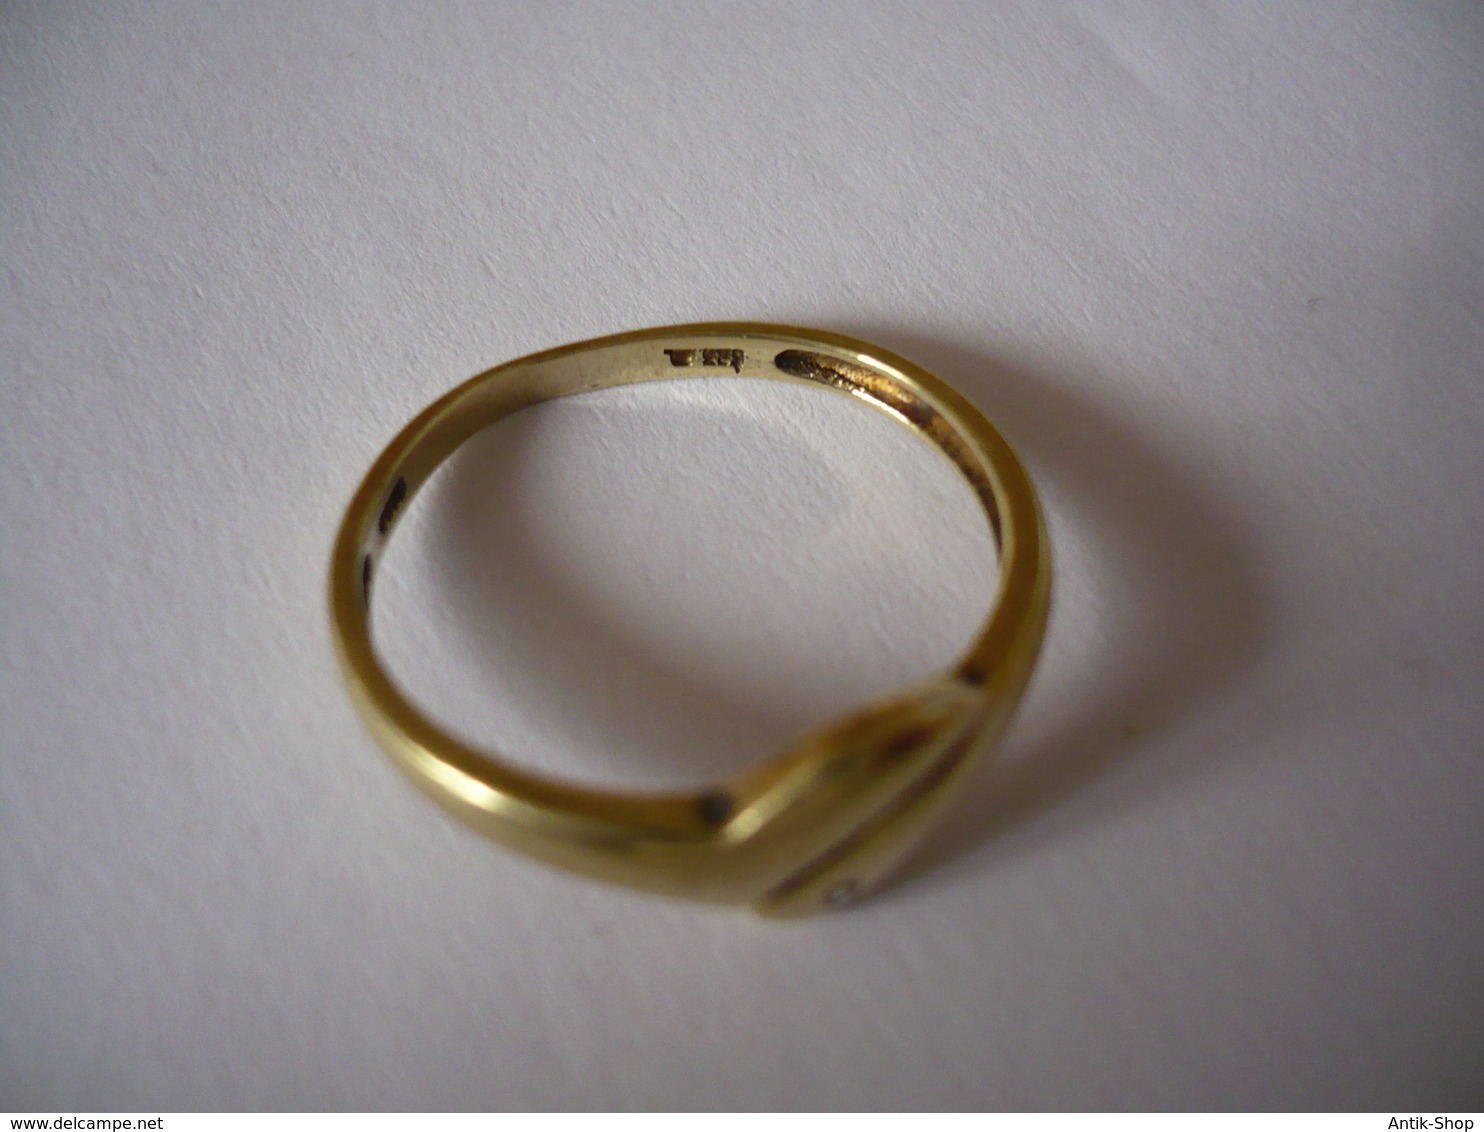 Damenring - 585 Gelbgold Mit Kleinem Brillanten (648) Preis Reduziert - Ringe